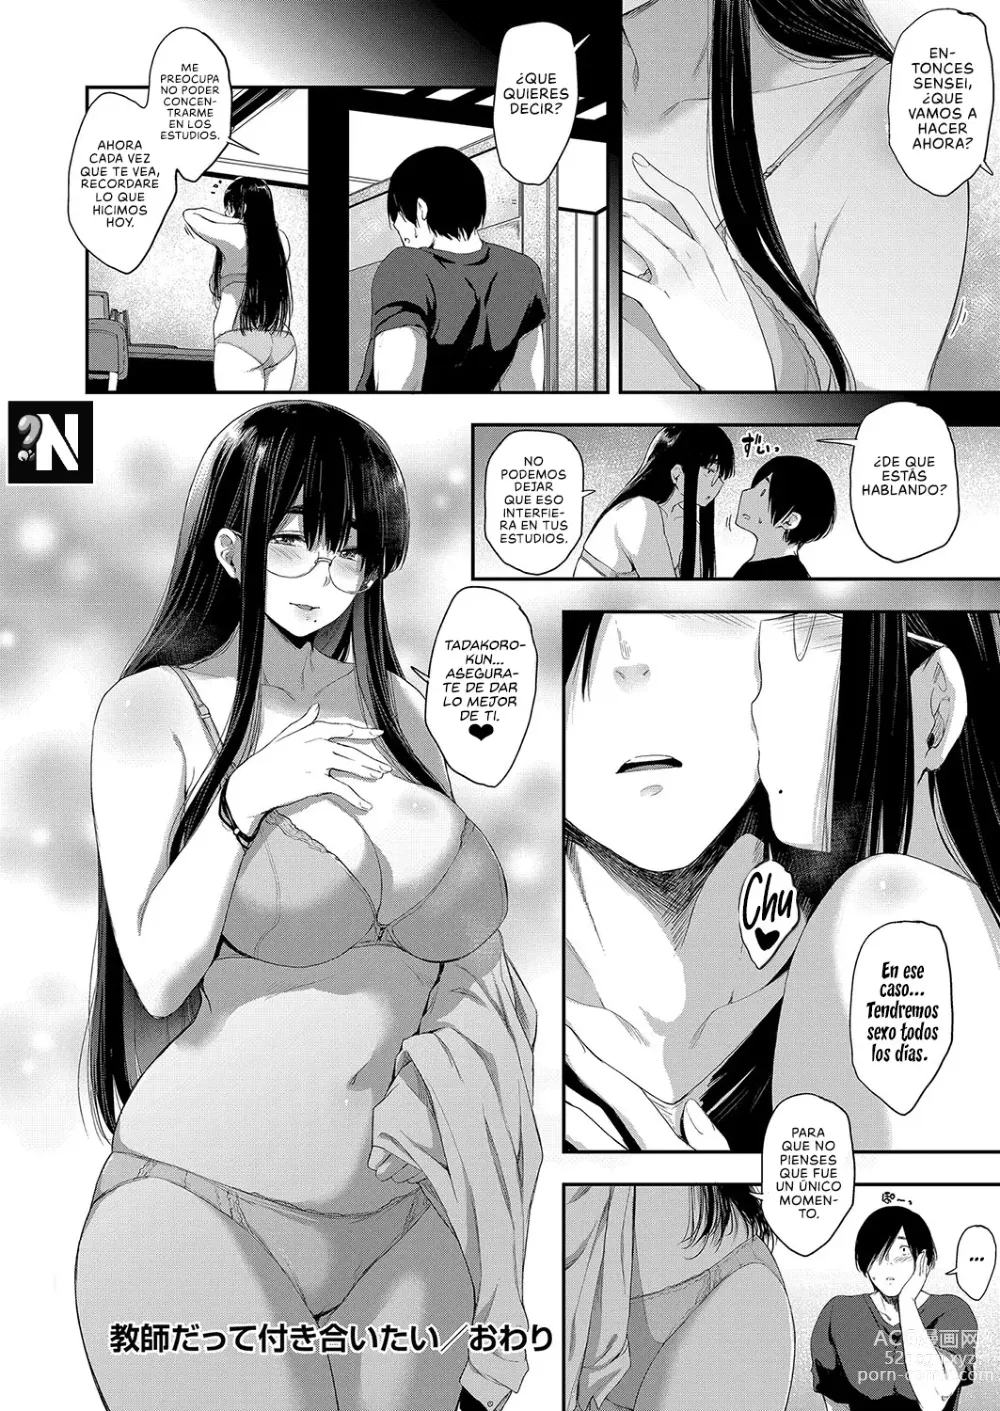 Page 24 of manga Incluso una Profesora Quiere tener una Cita